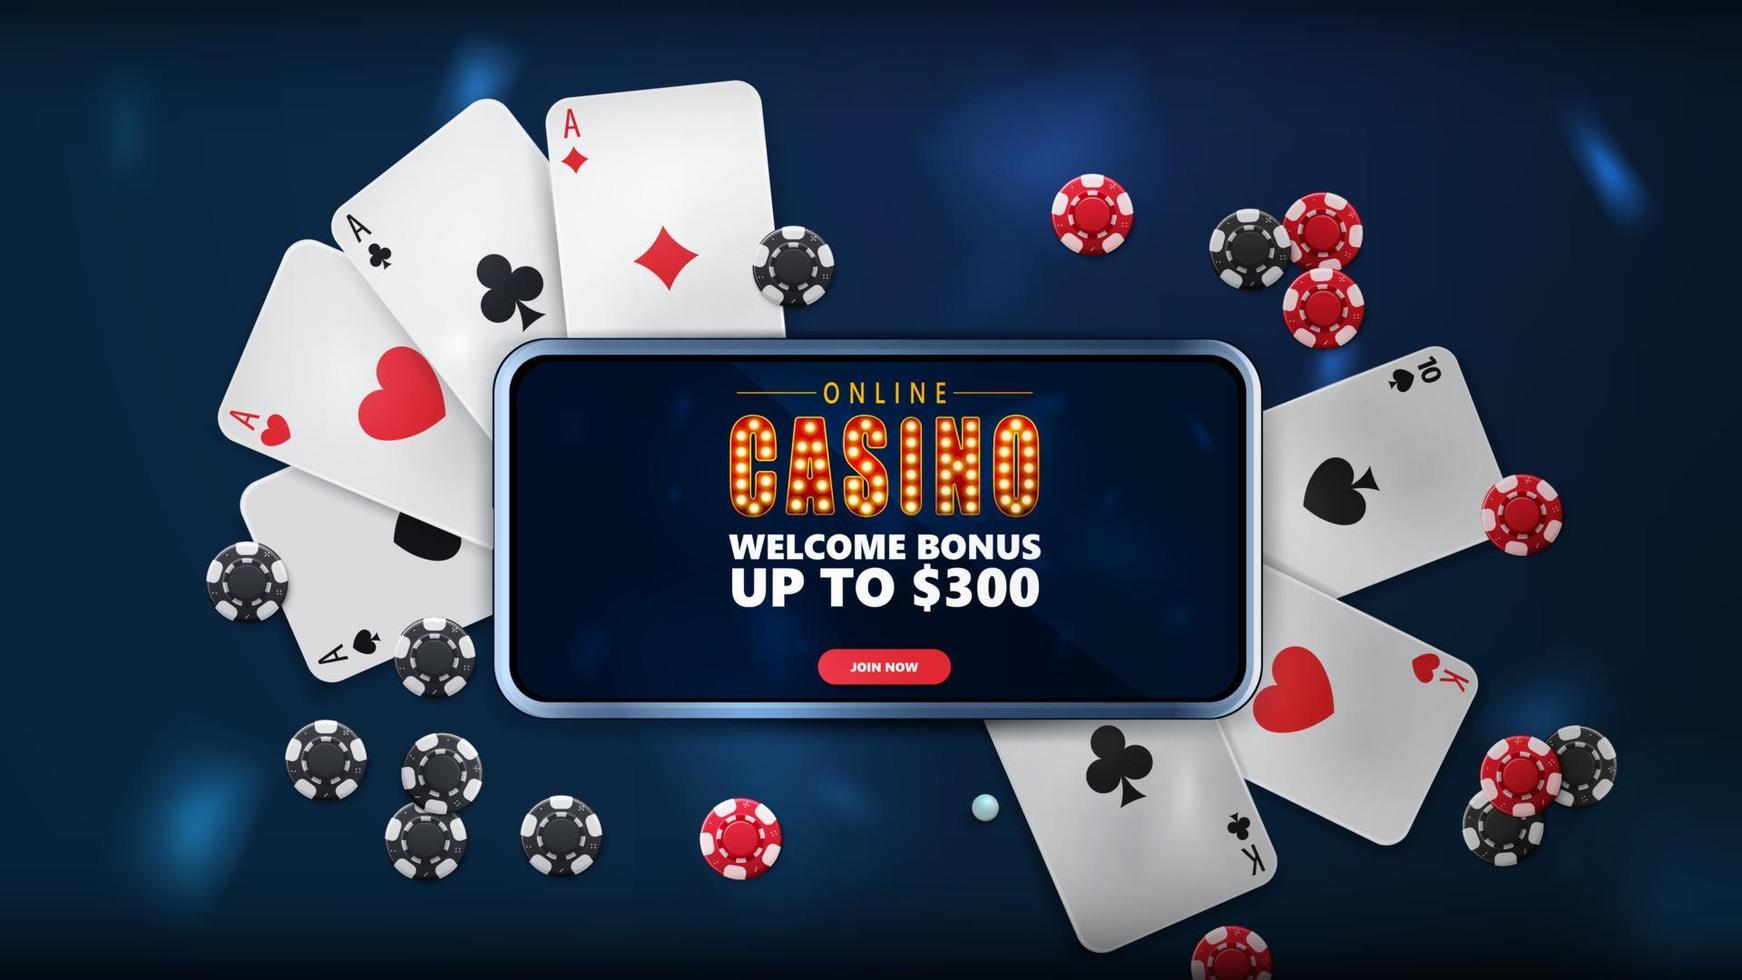 online casino, blauwe banner met smartphone met aanbieding, speelkaarten en pokerfiches, bovenaanzicht vector